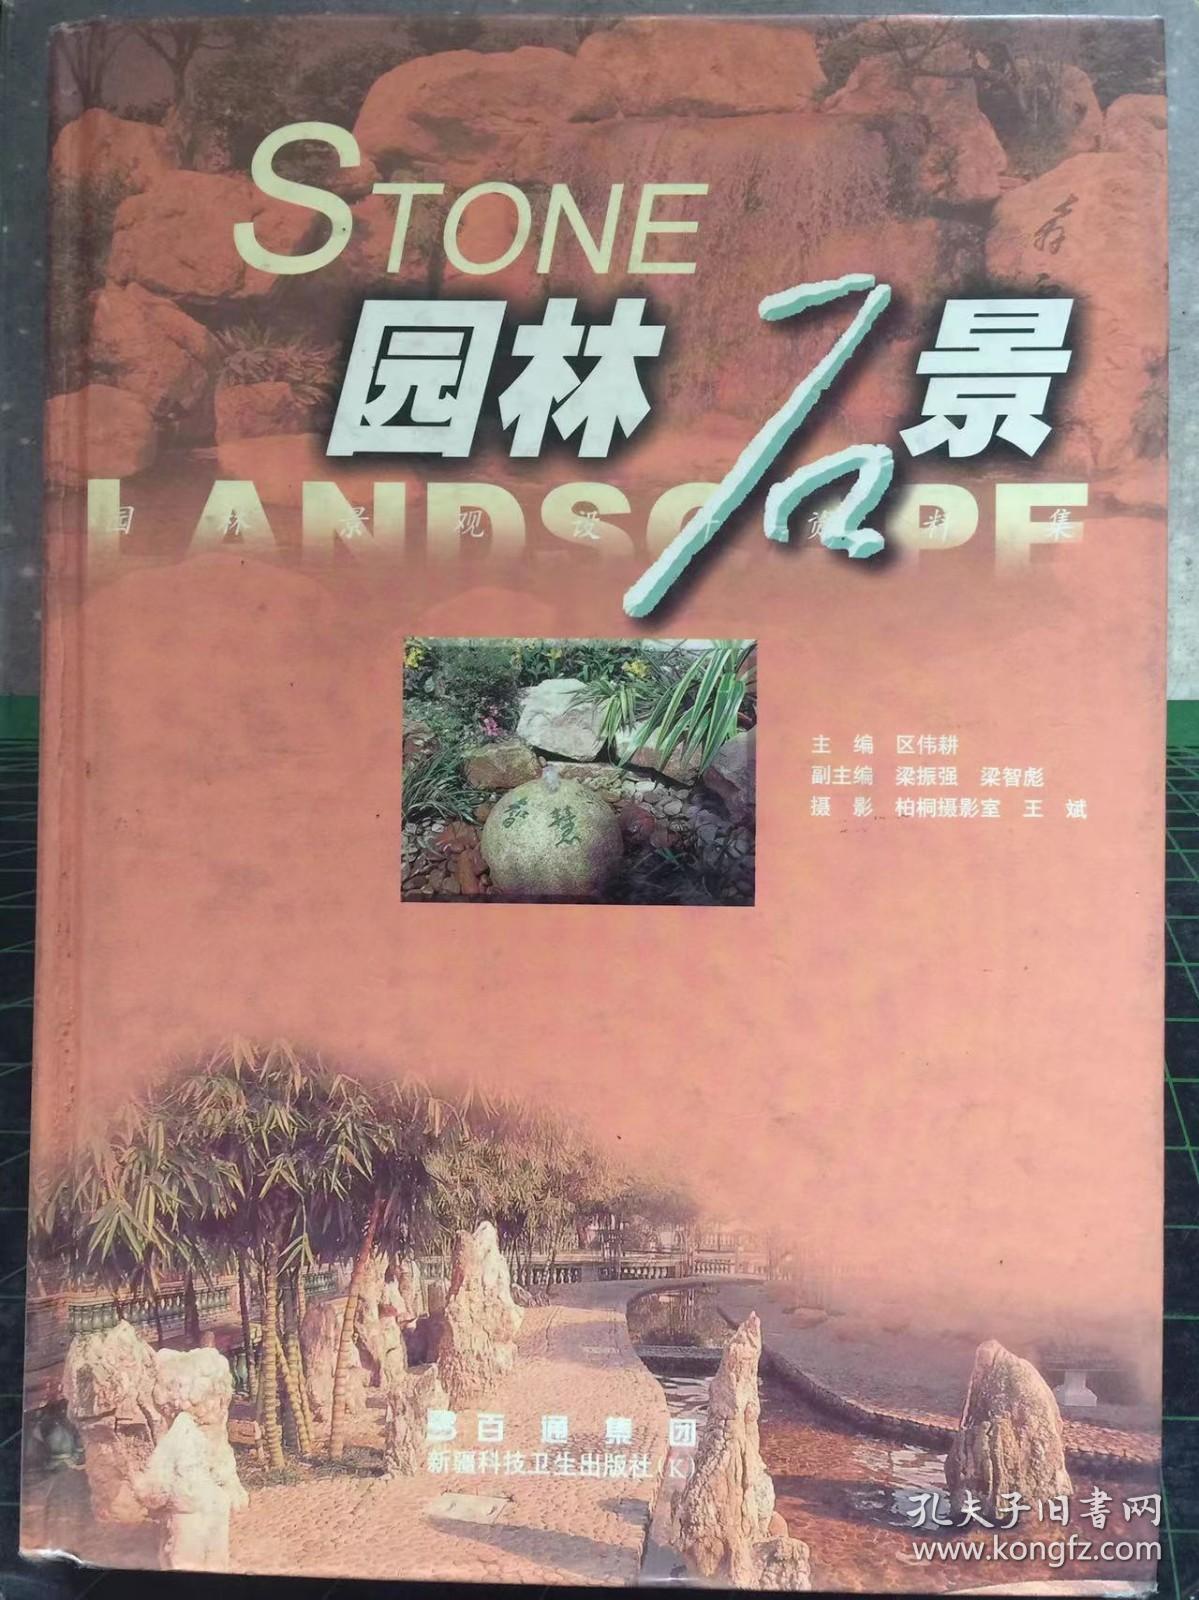 园林石景  区伟耕主编，百通集团出版发行，2002年10月第一版，定价；108元。